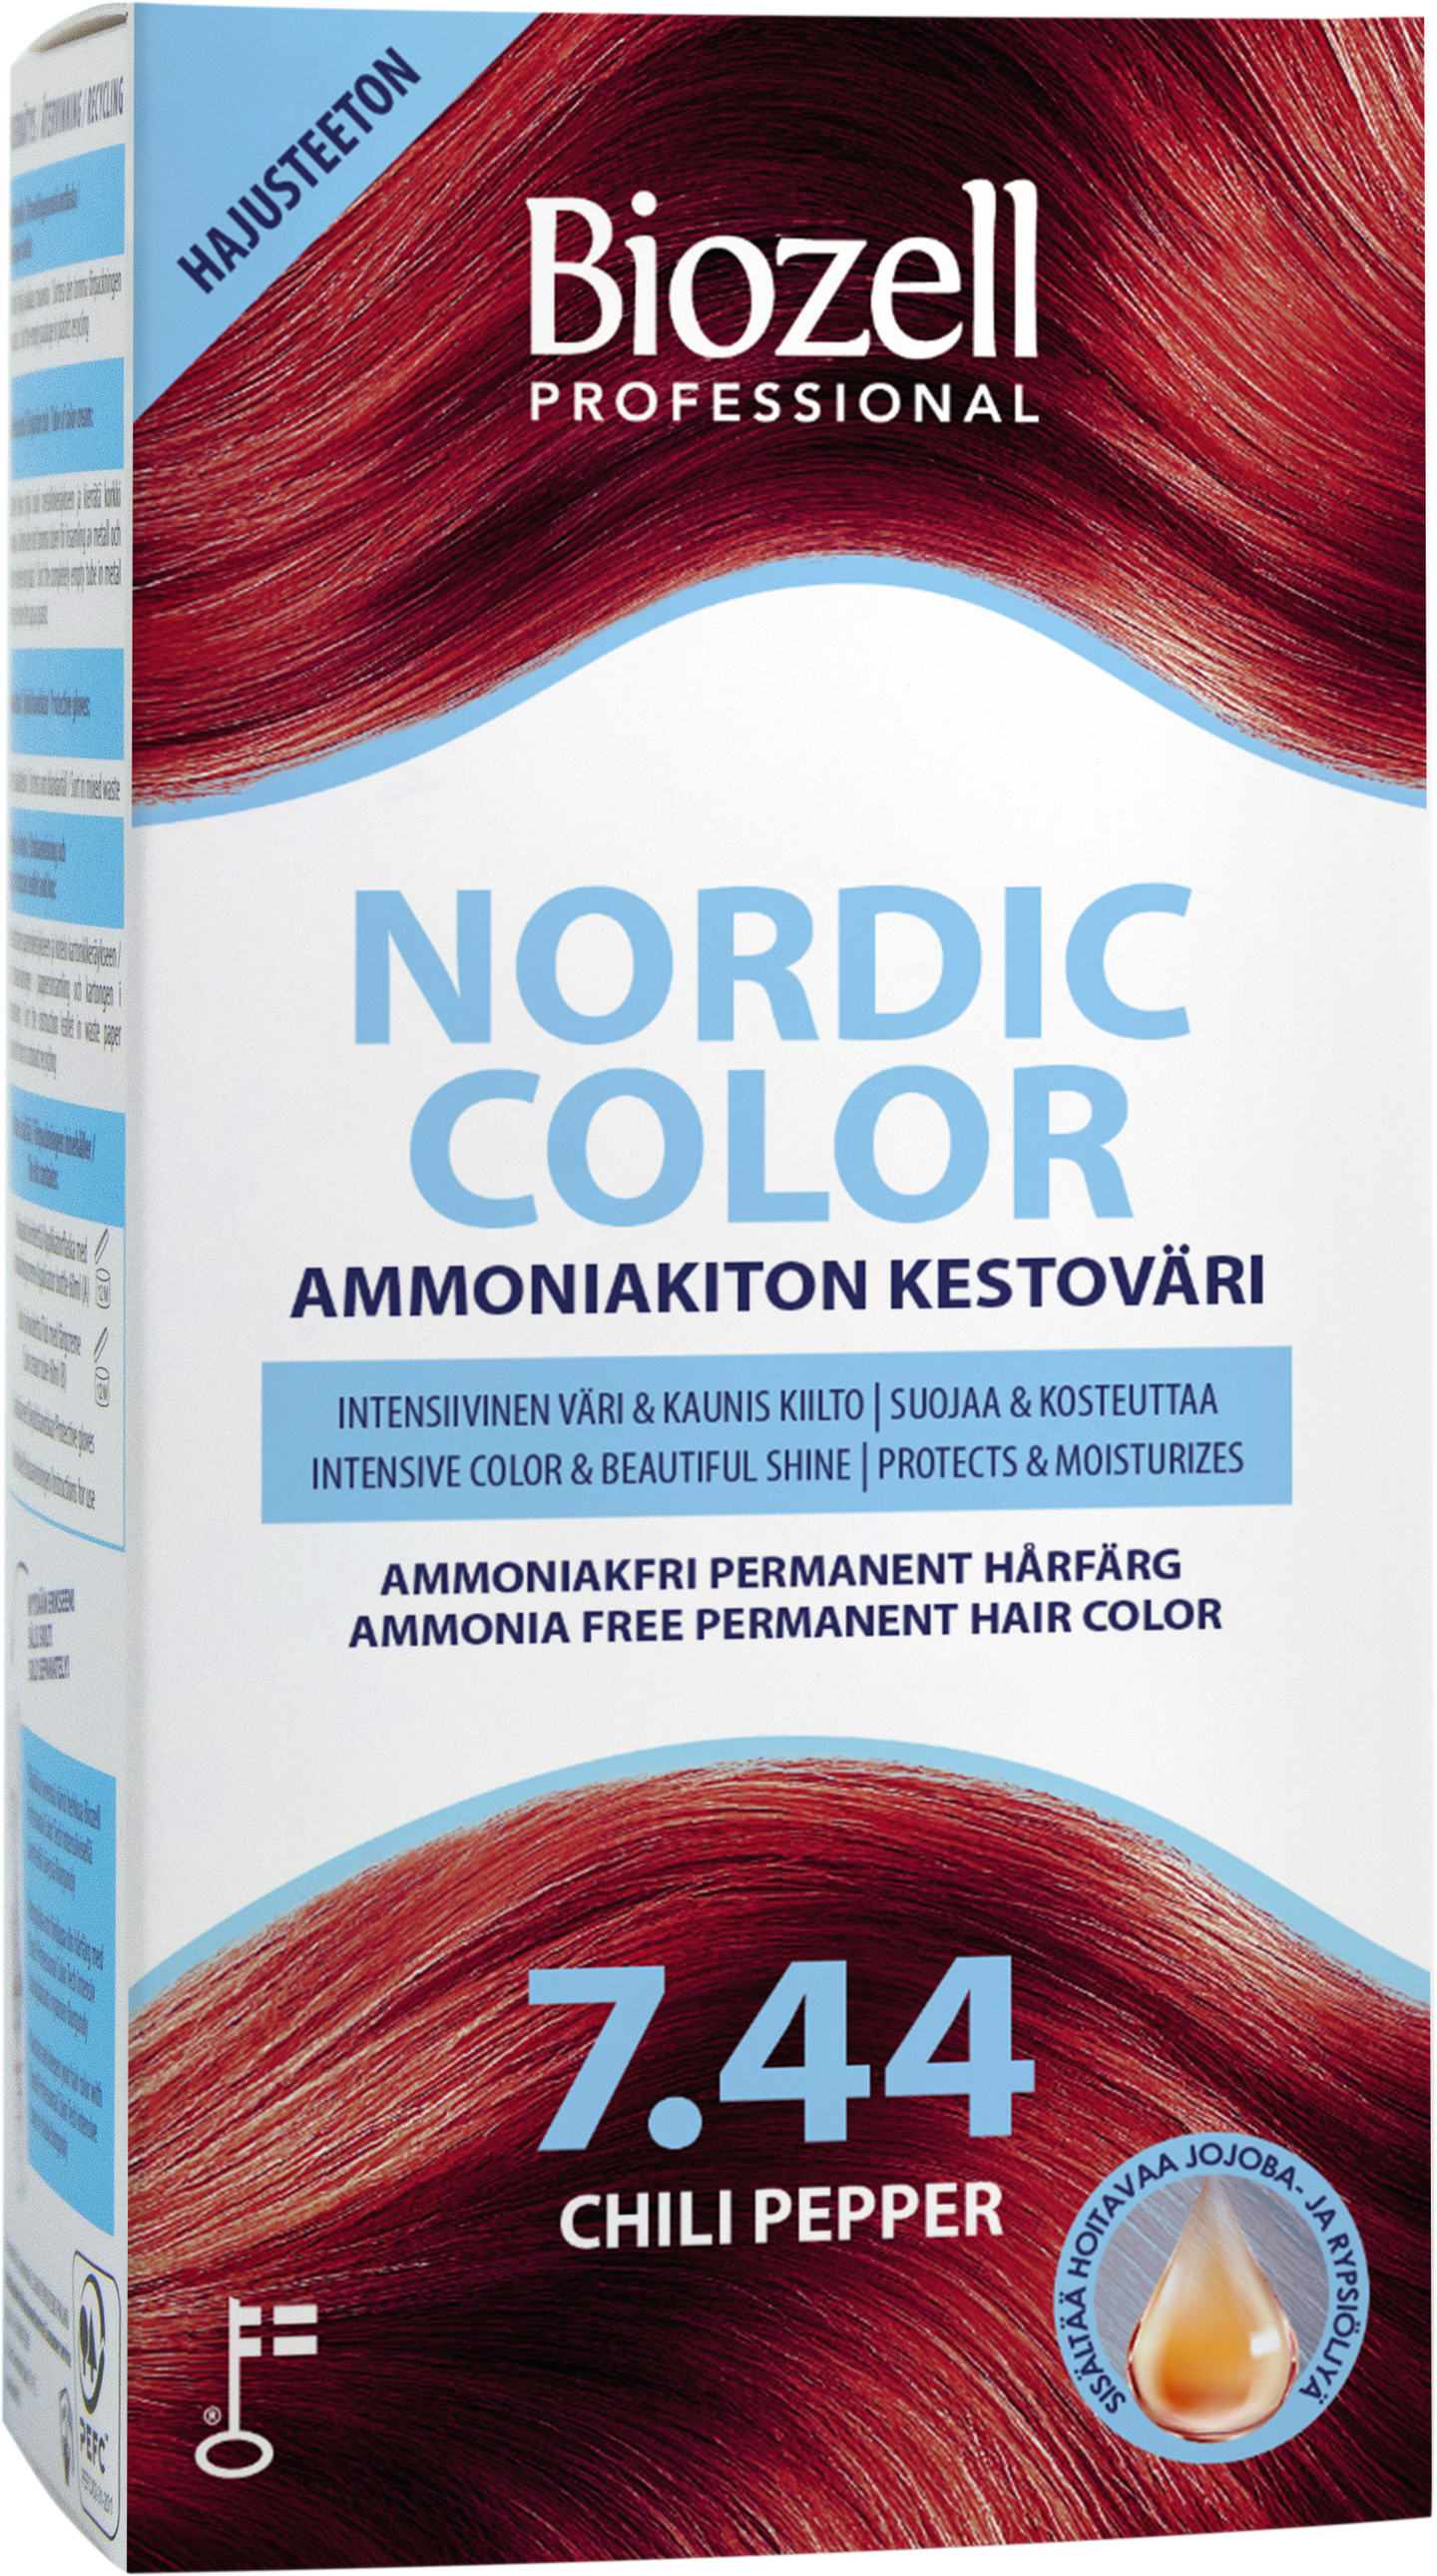 Biozell Professional Nordic Color kestoväri 7.44 2x60ml Chili Pepper ammoniakiton